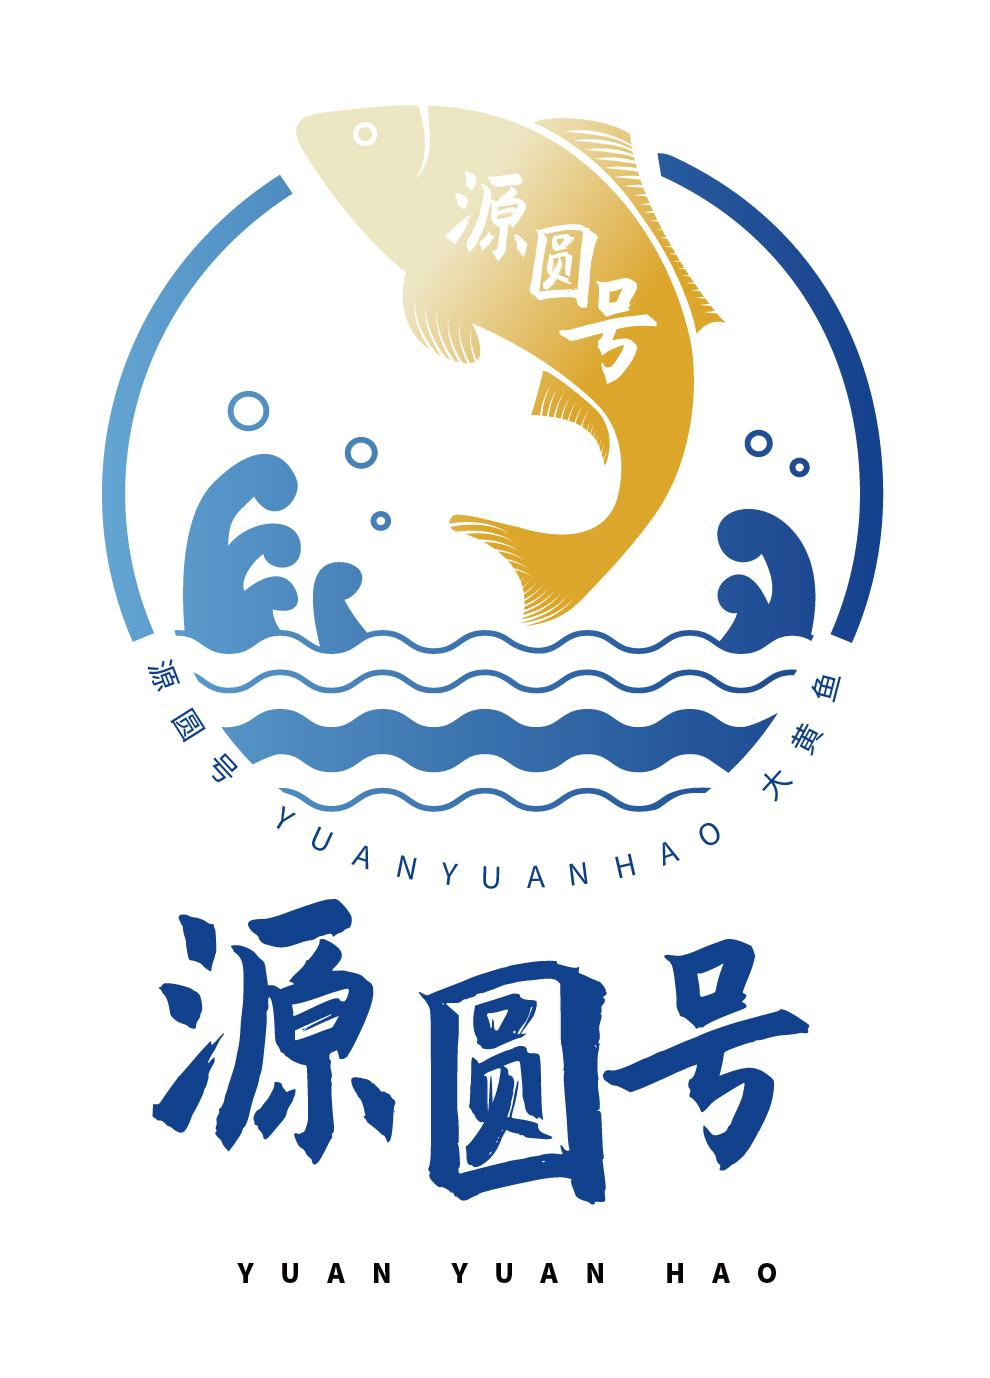 商标文字源圆号 源圆号 大黄鱼,商标申请人广州绿程水产有限公司的